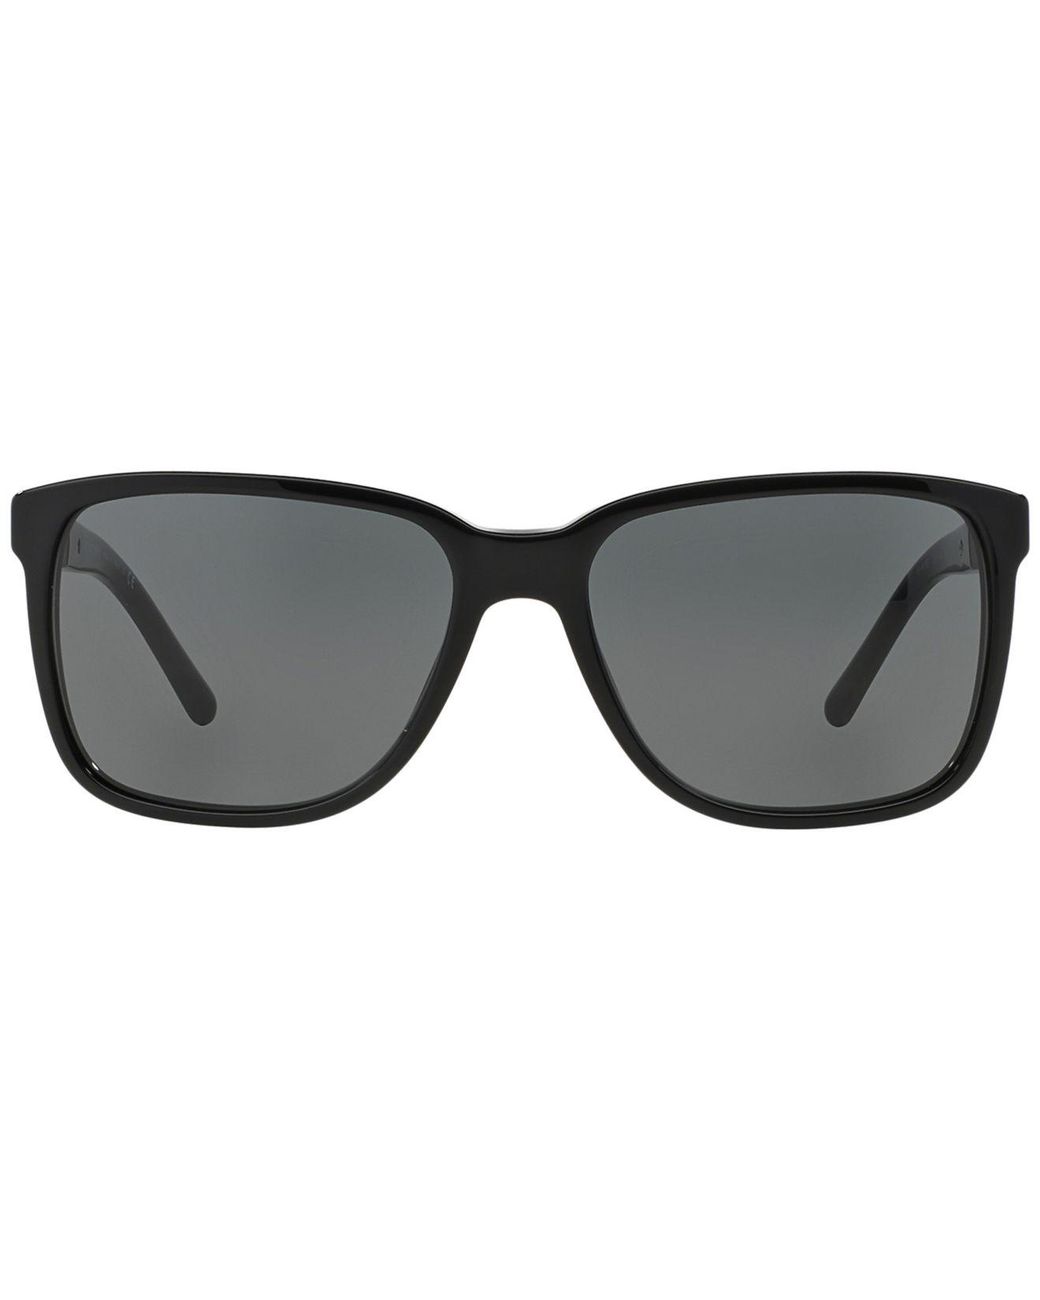 Burberry Briar BE4181 3001/87 Sunglasses - US